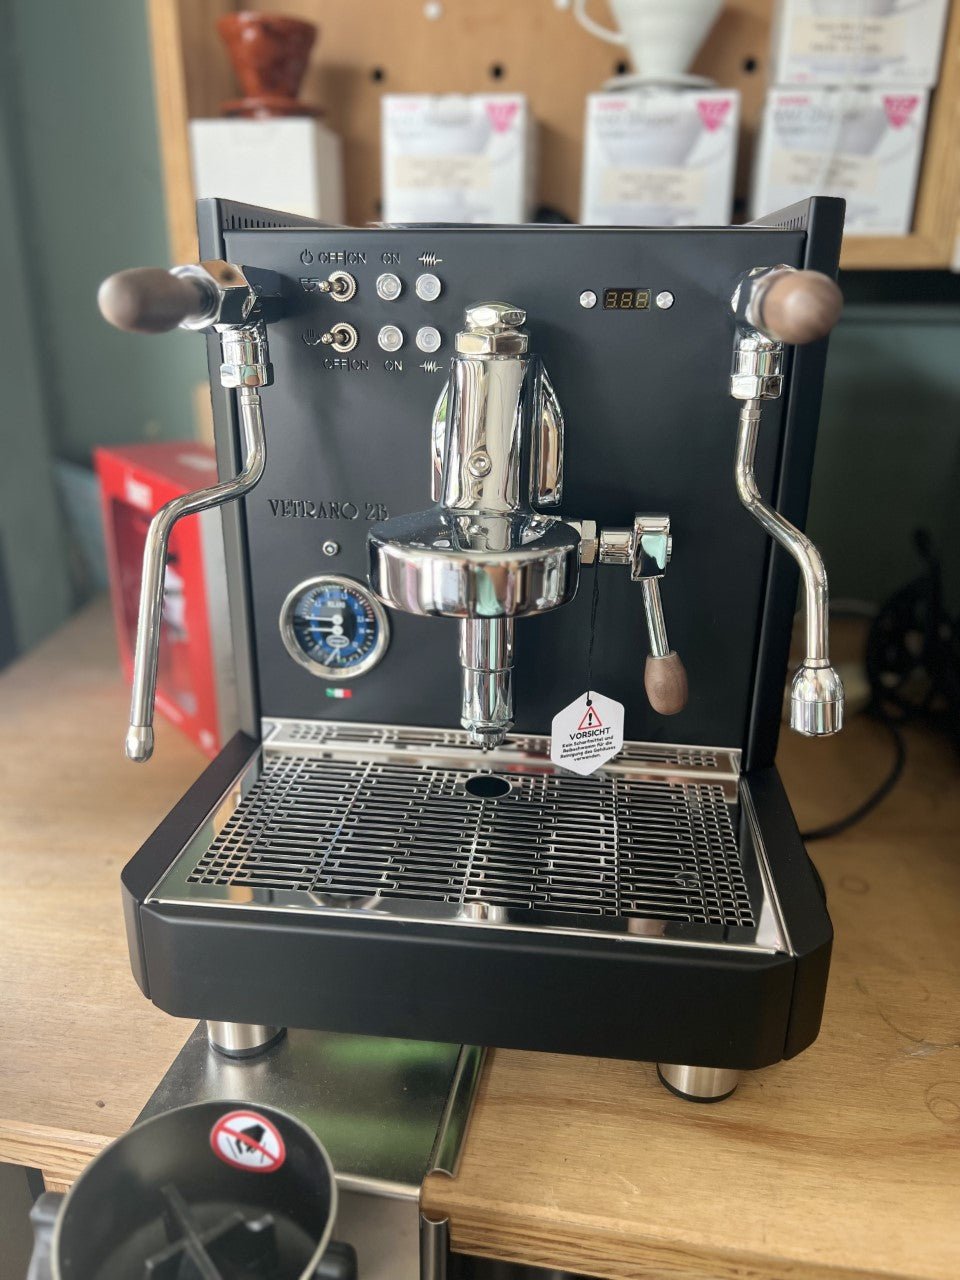 Quick Mill Vetrano 2B Evo Espresso Machine